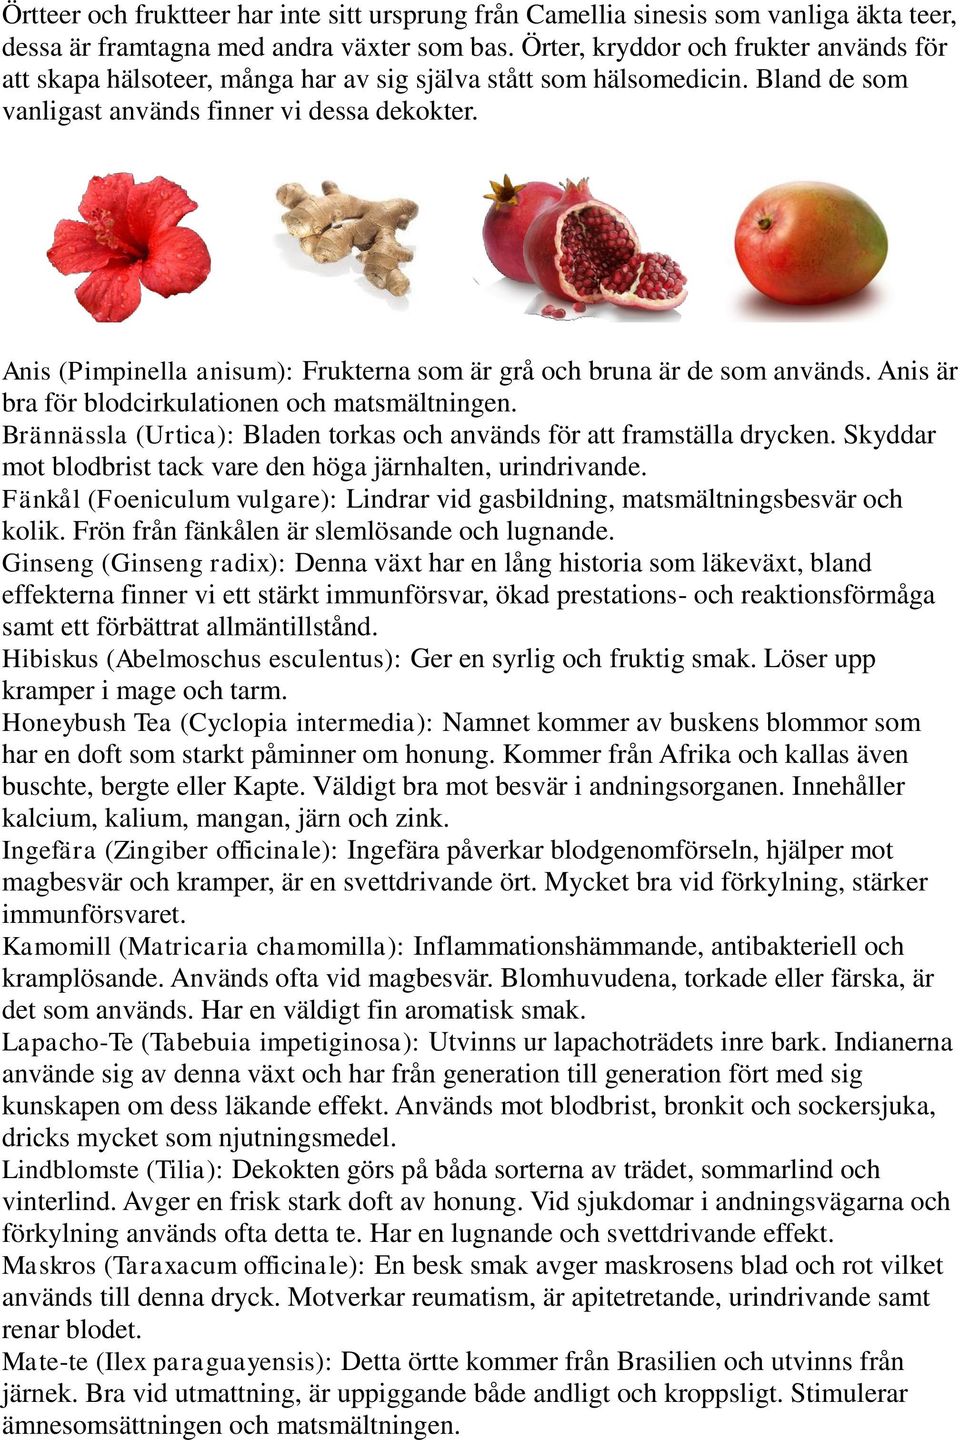 Anis (Pimpinella anisum): Frukterna som är grå och bruna är de som används. Anis är bra för blodcirkulationen och matsmältningen.